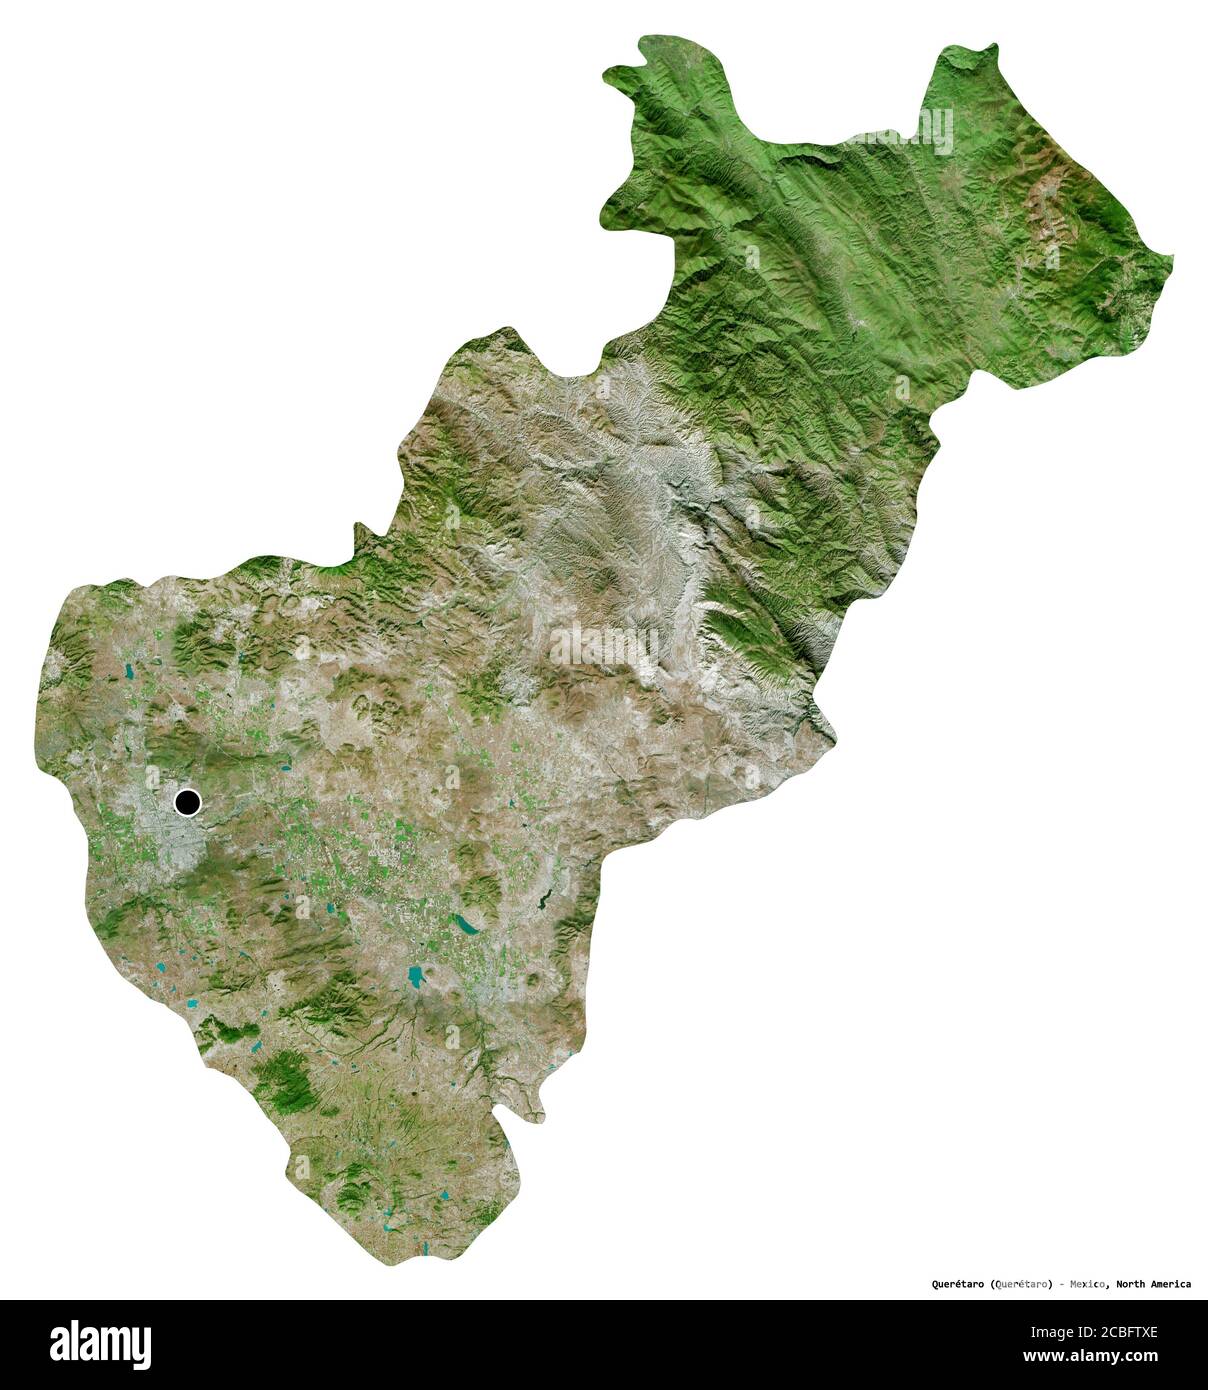 Forme de Querétaro, état du Mexique, avec sa capitale isolée sur fond blanc. Imagerie satellite. Rendu 3D Banque D'Images